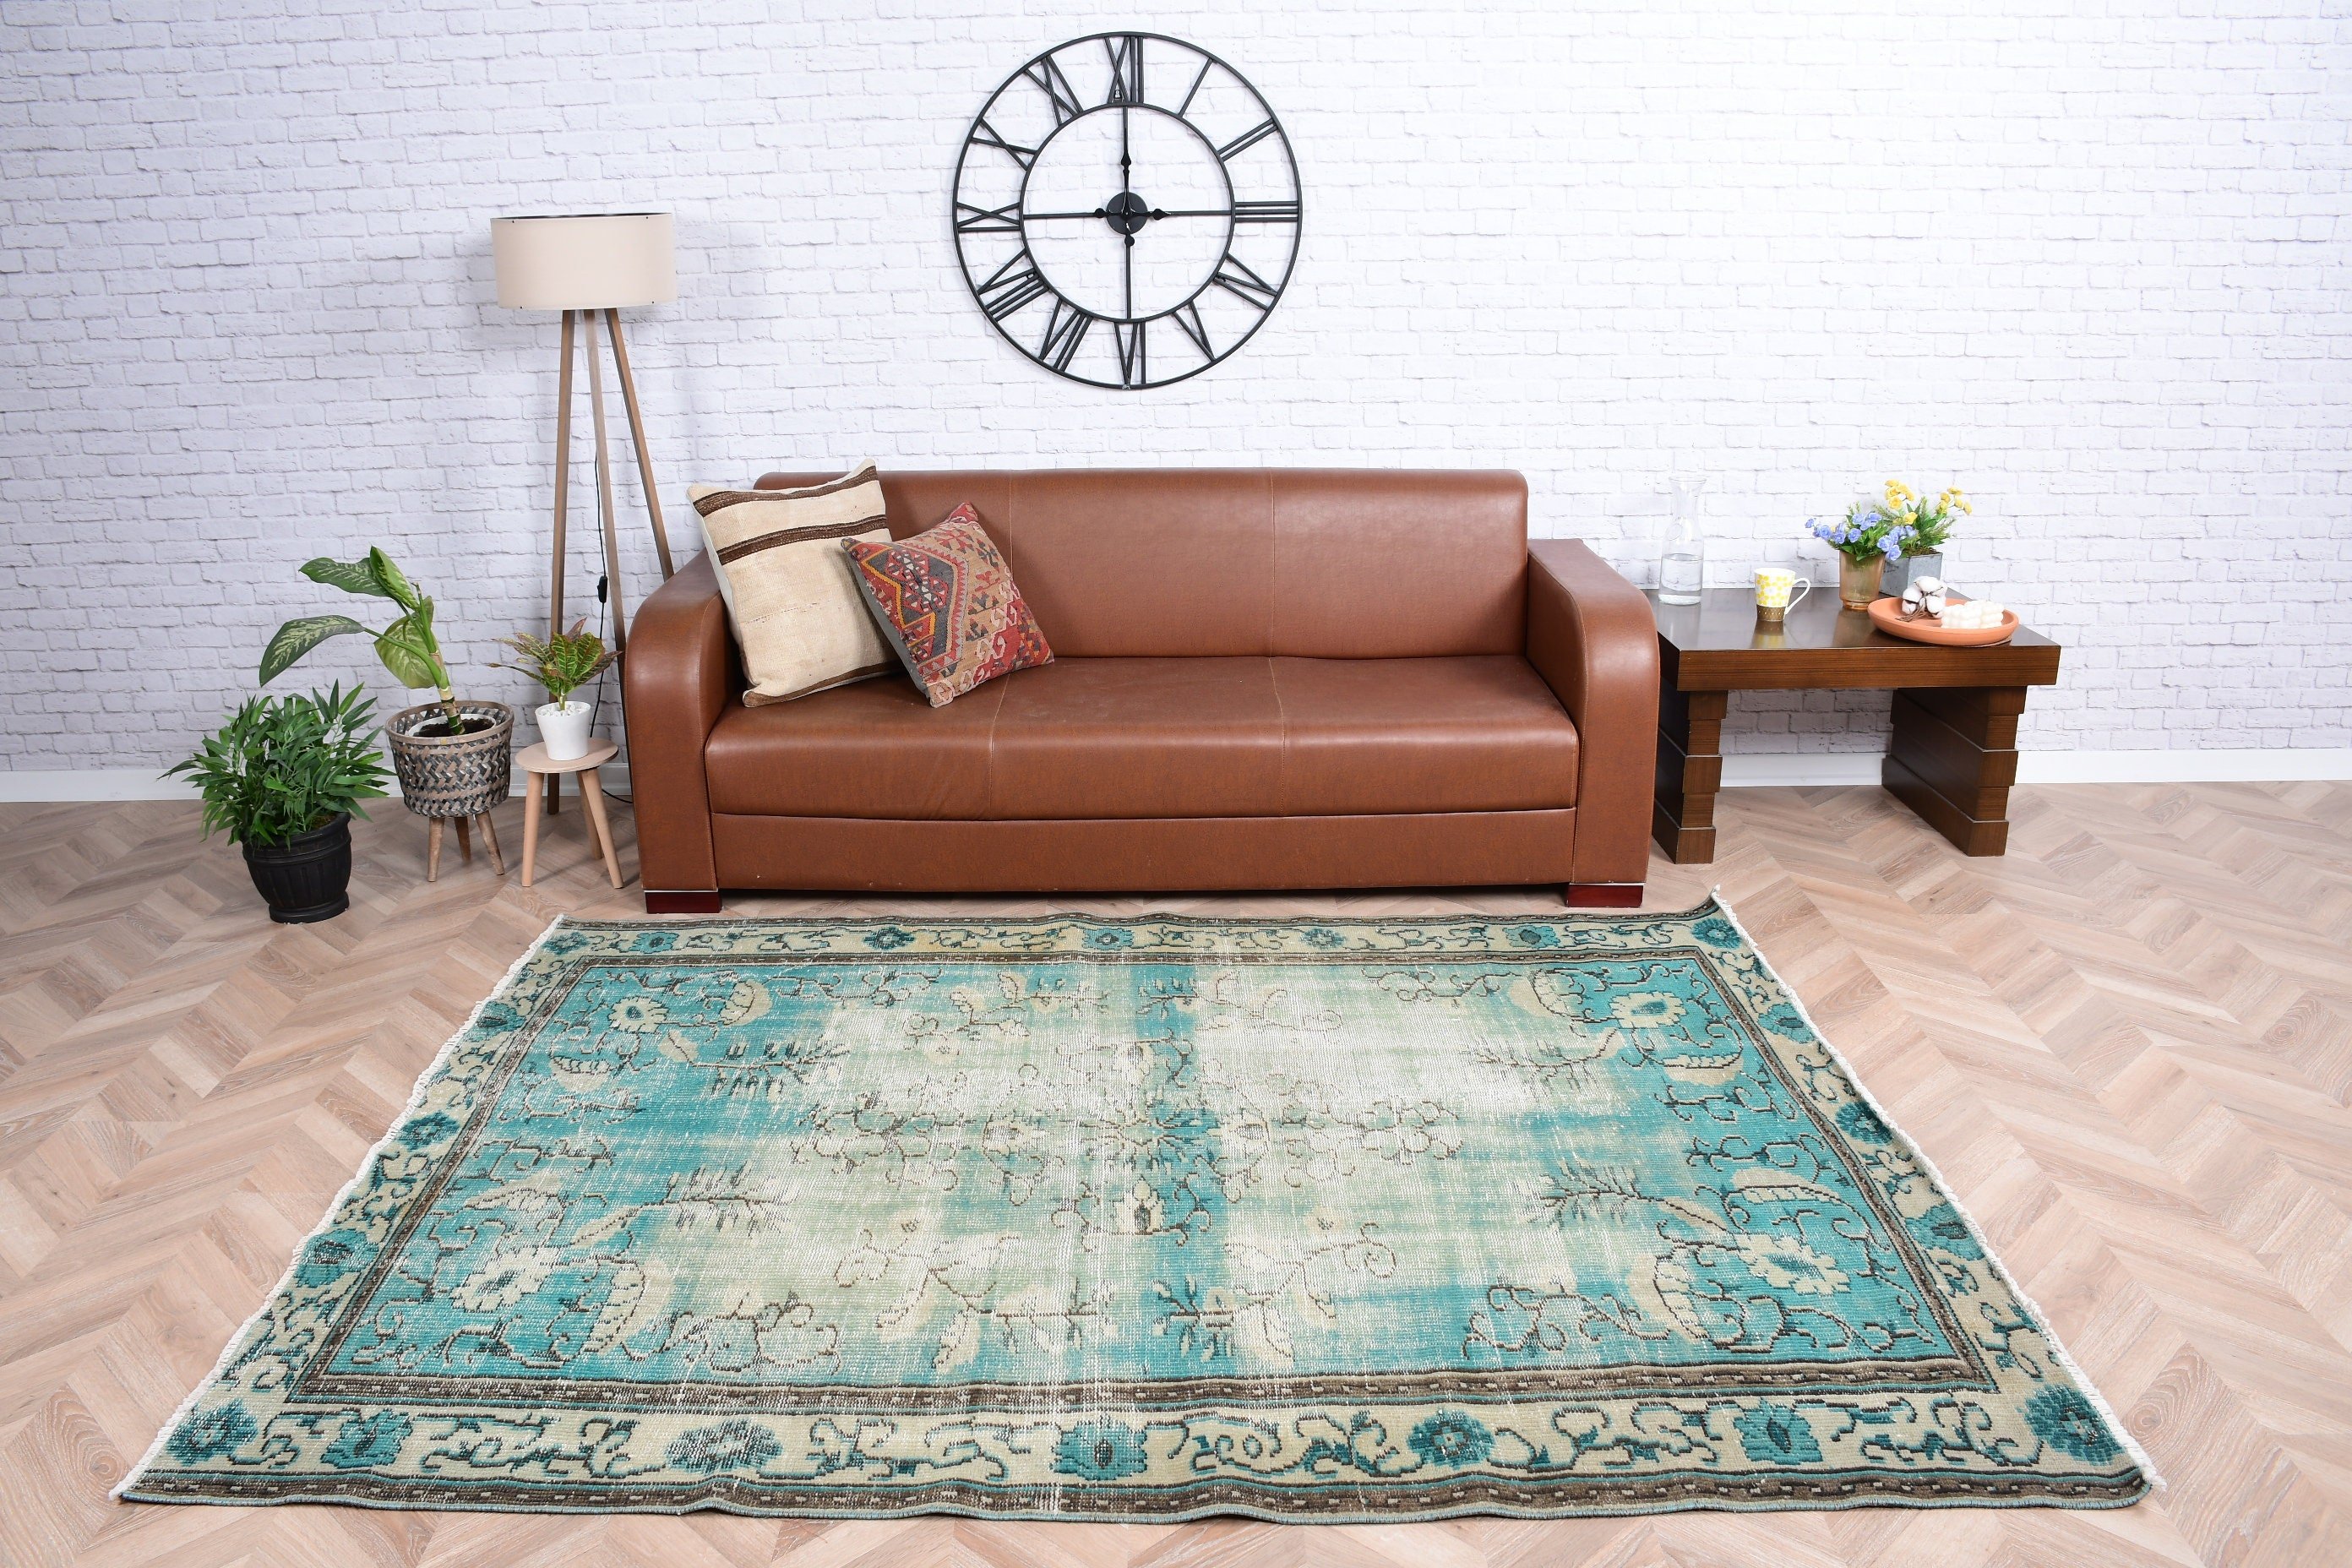 Vintage Rug, Green Floor Rug, Turkish Rug, Living Room Rug, Bedroom Rugs, Rugs for Bedroom, Wool Rug, Salon Rugs, 5.6x7.5 ft Large Rug